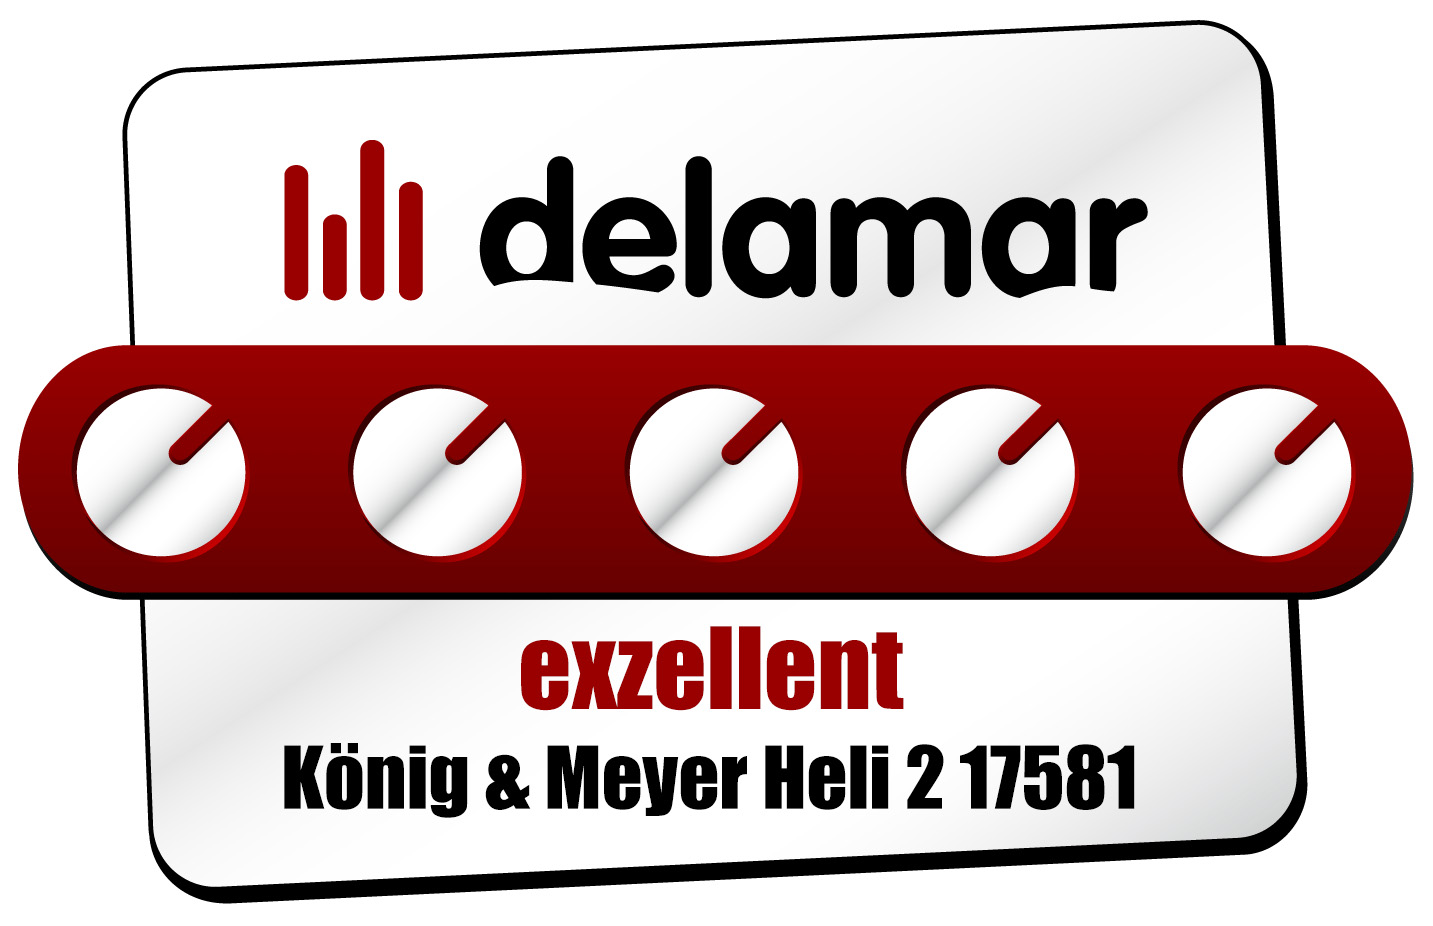 delamar test K&M